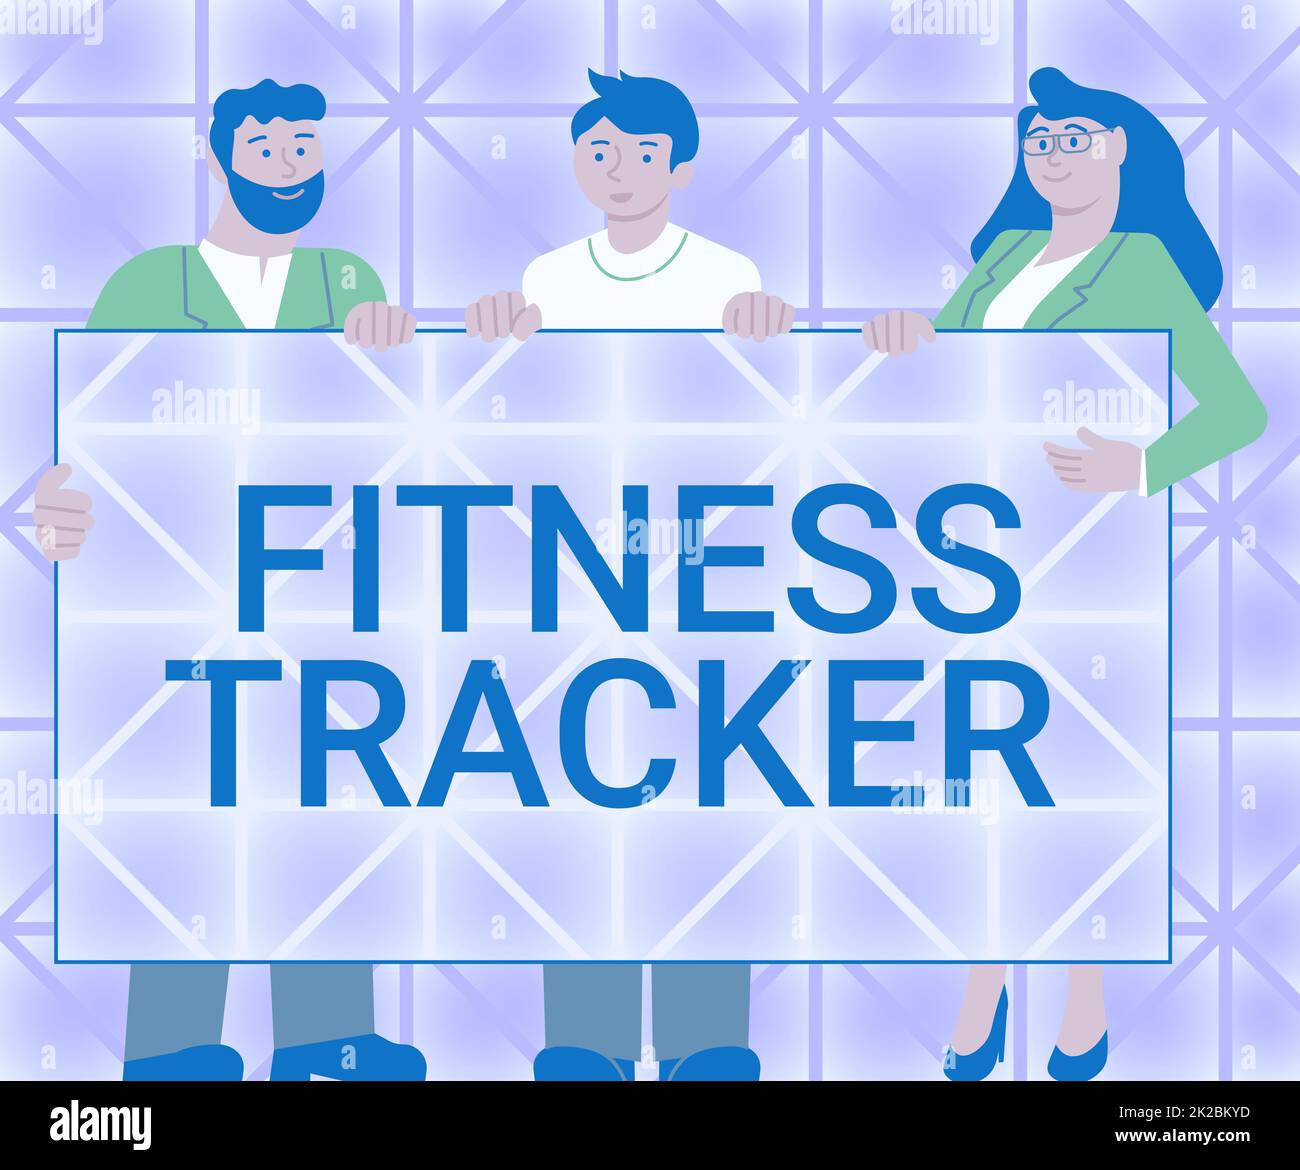 Schreiben zeigt Text Fitness Tracker an. Konzept bedeutet Gerät, das die tägliche körperliche Aktivität einer Person aufzeichnet drei Kollegen, die eine Präsentationstafel halten und neue Ideen zeigen. Stockfoto